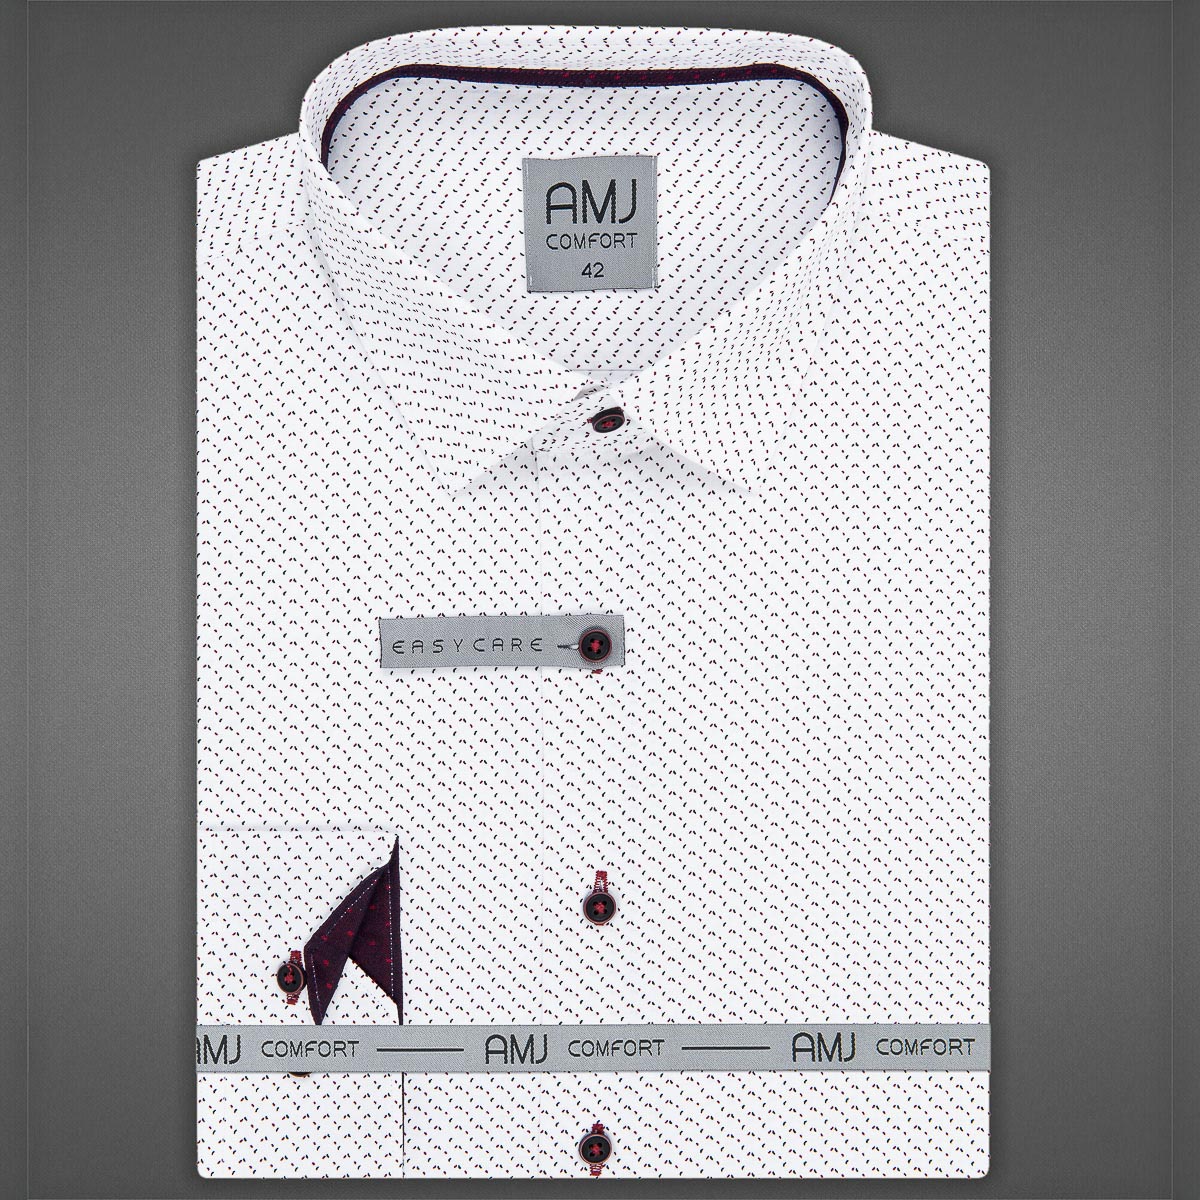 Pánská košile AMJ bavlněná, bílá zrníčkovaná VDBR1189, dlouhý rukáv (regular + slim-fit)